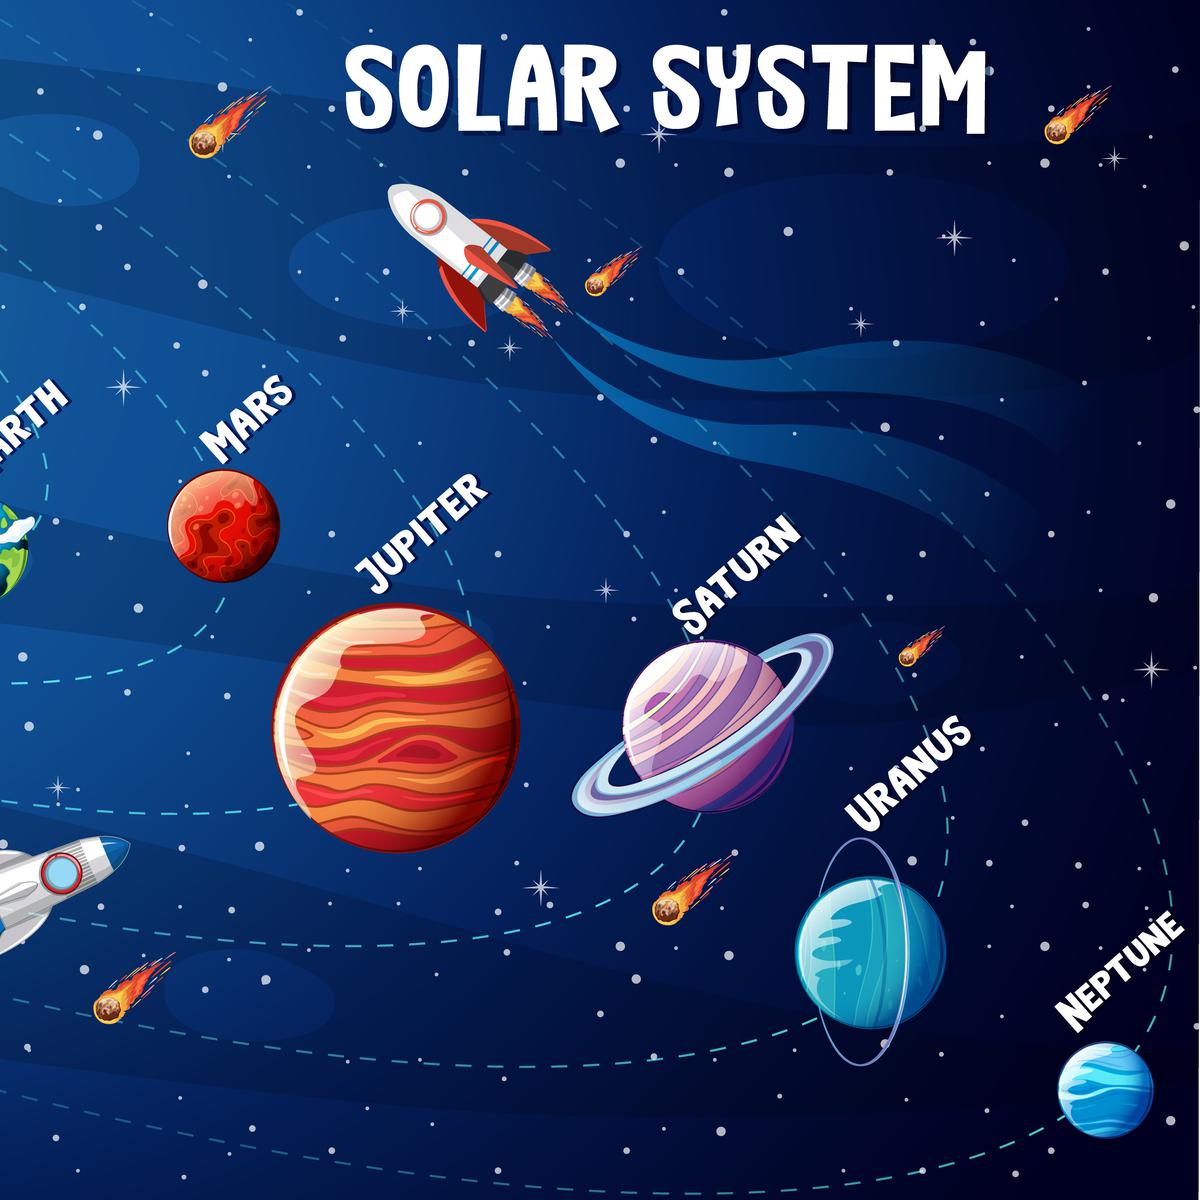 Planet terbesar dalam tata surya adalah